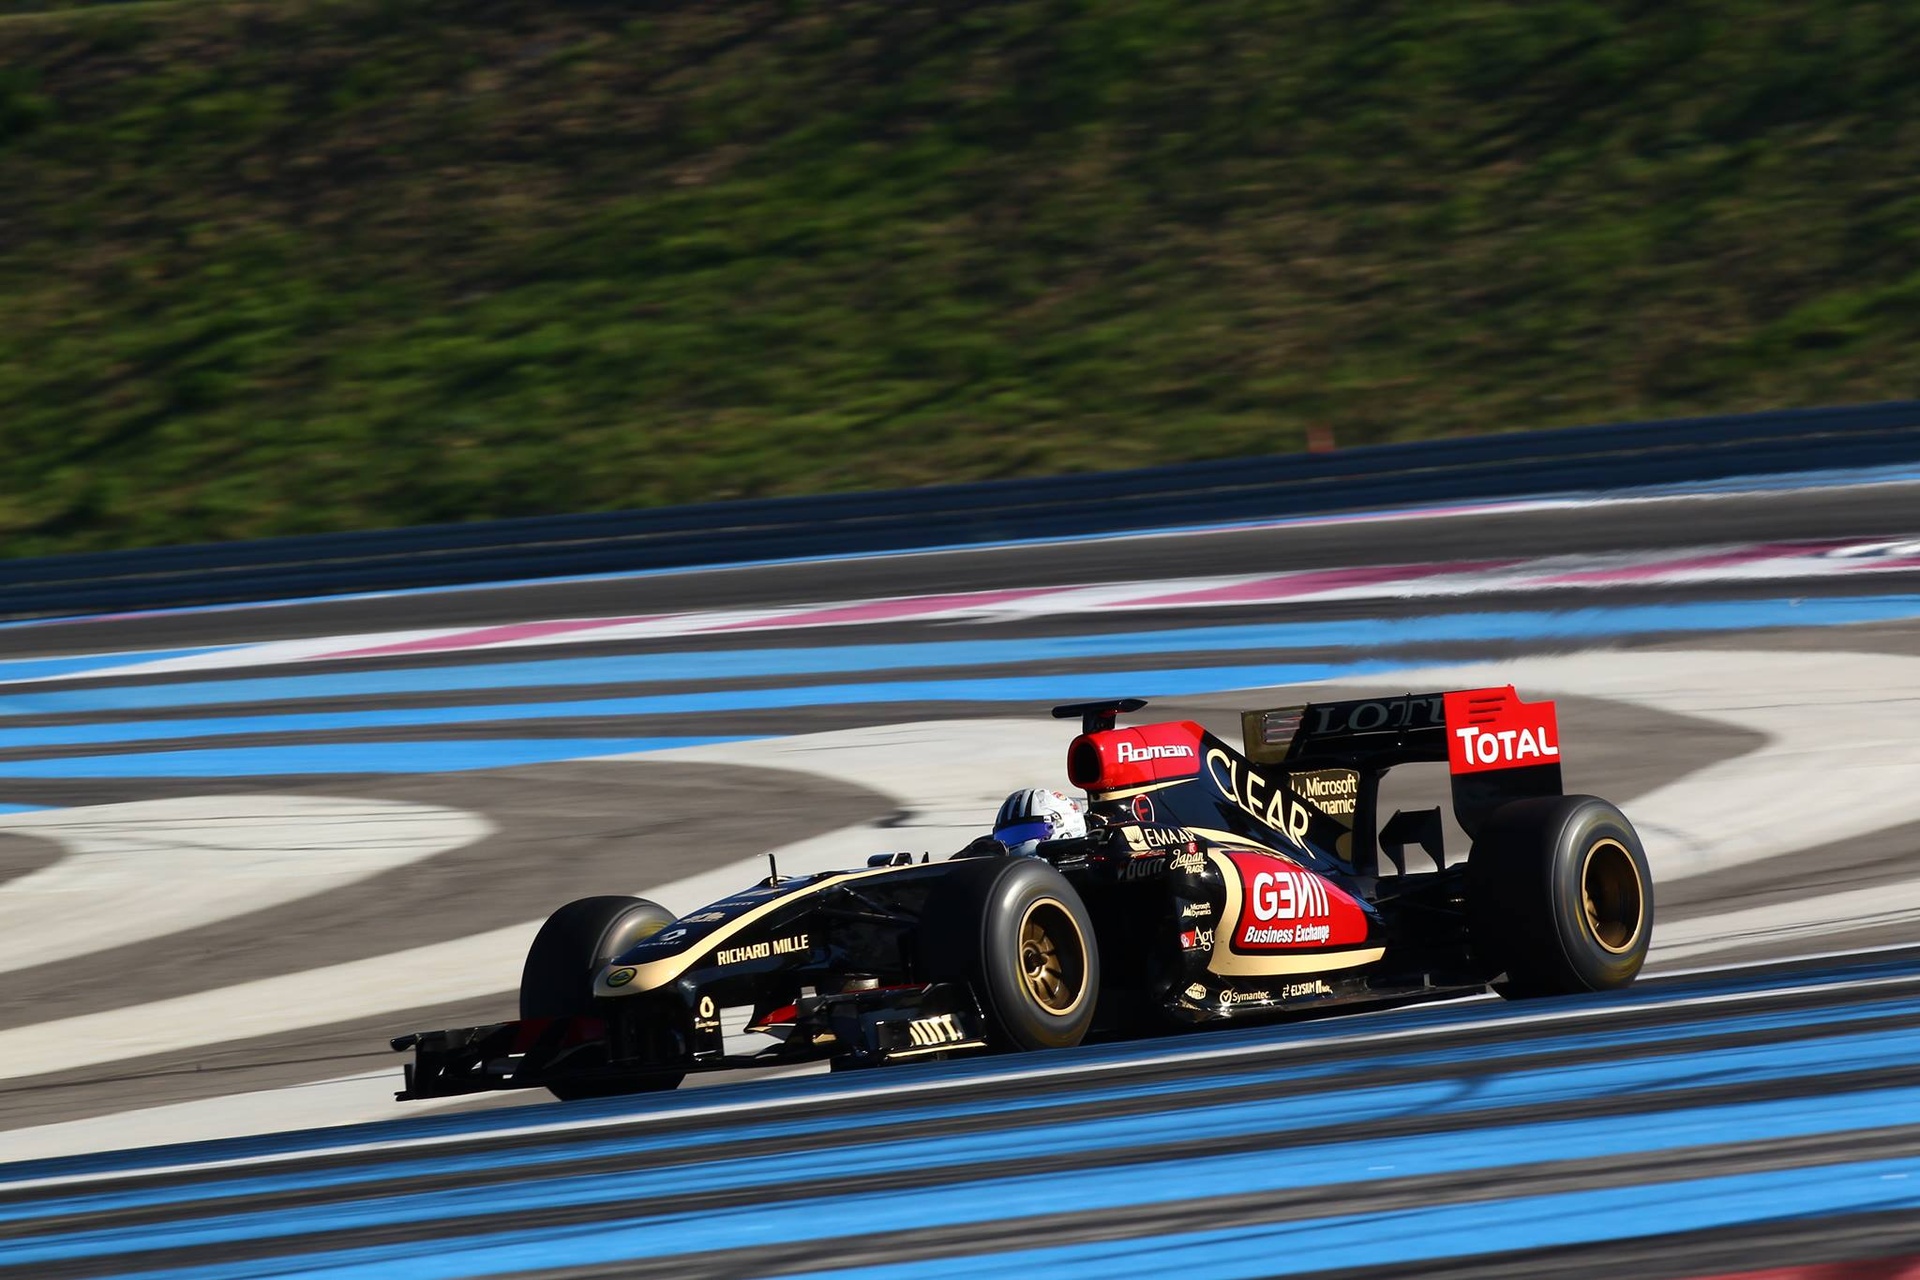 アレックス フォンタナ: 30 年 2013 月 1 日、ティチーノ出身のドライバーは、ポール リカールのフランス サーキットでフォーミュラ XNUMX ロータス ルノーのテストを実施しました。